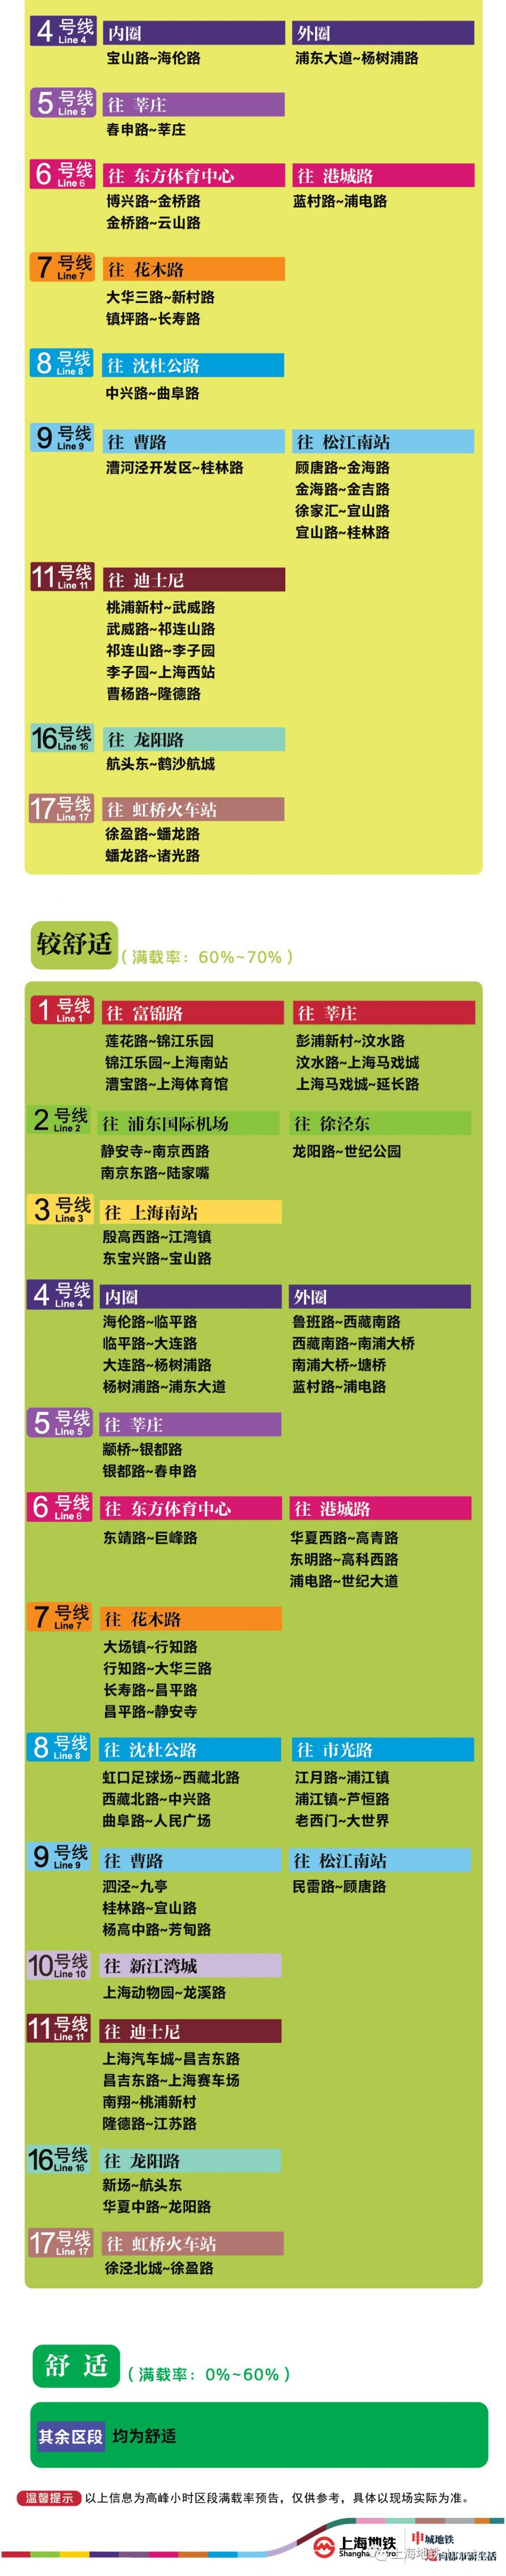 8月20日上海11座地铁站早高峰限流(附舒适度预告)